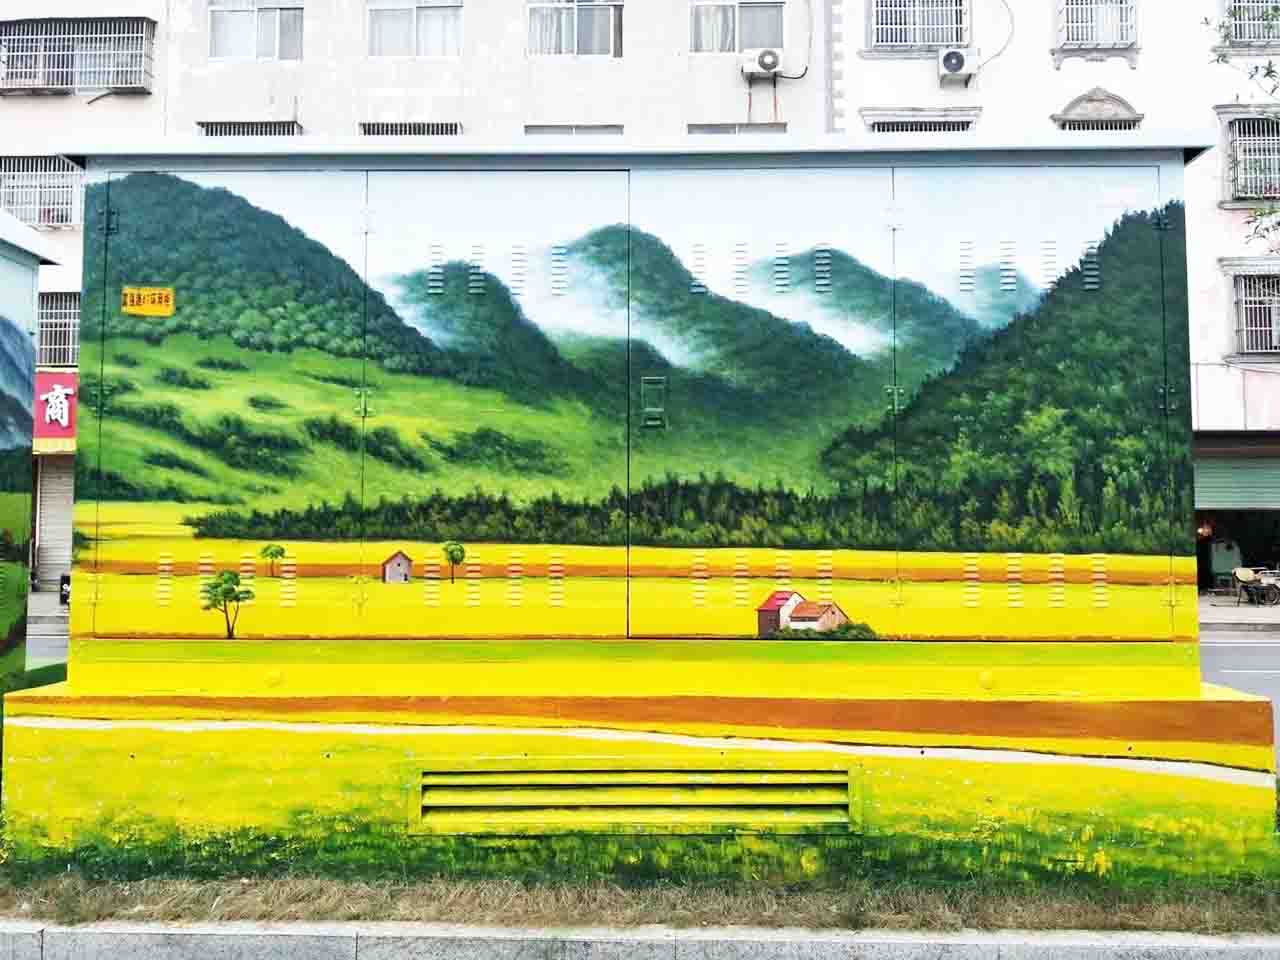 市政景区街道配变电箱写实油菜风景创意乡村墙绘壁画彩绘涂鸦手绘成都澜泉文化